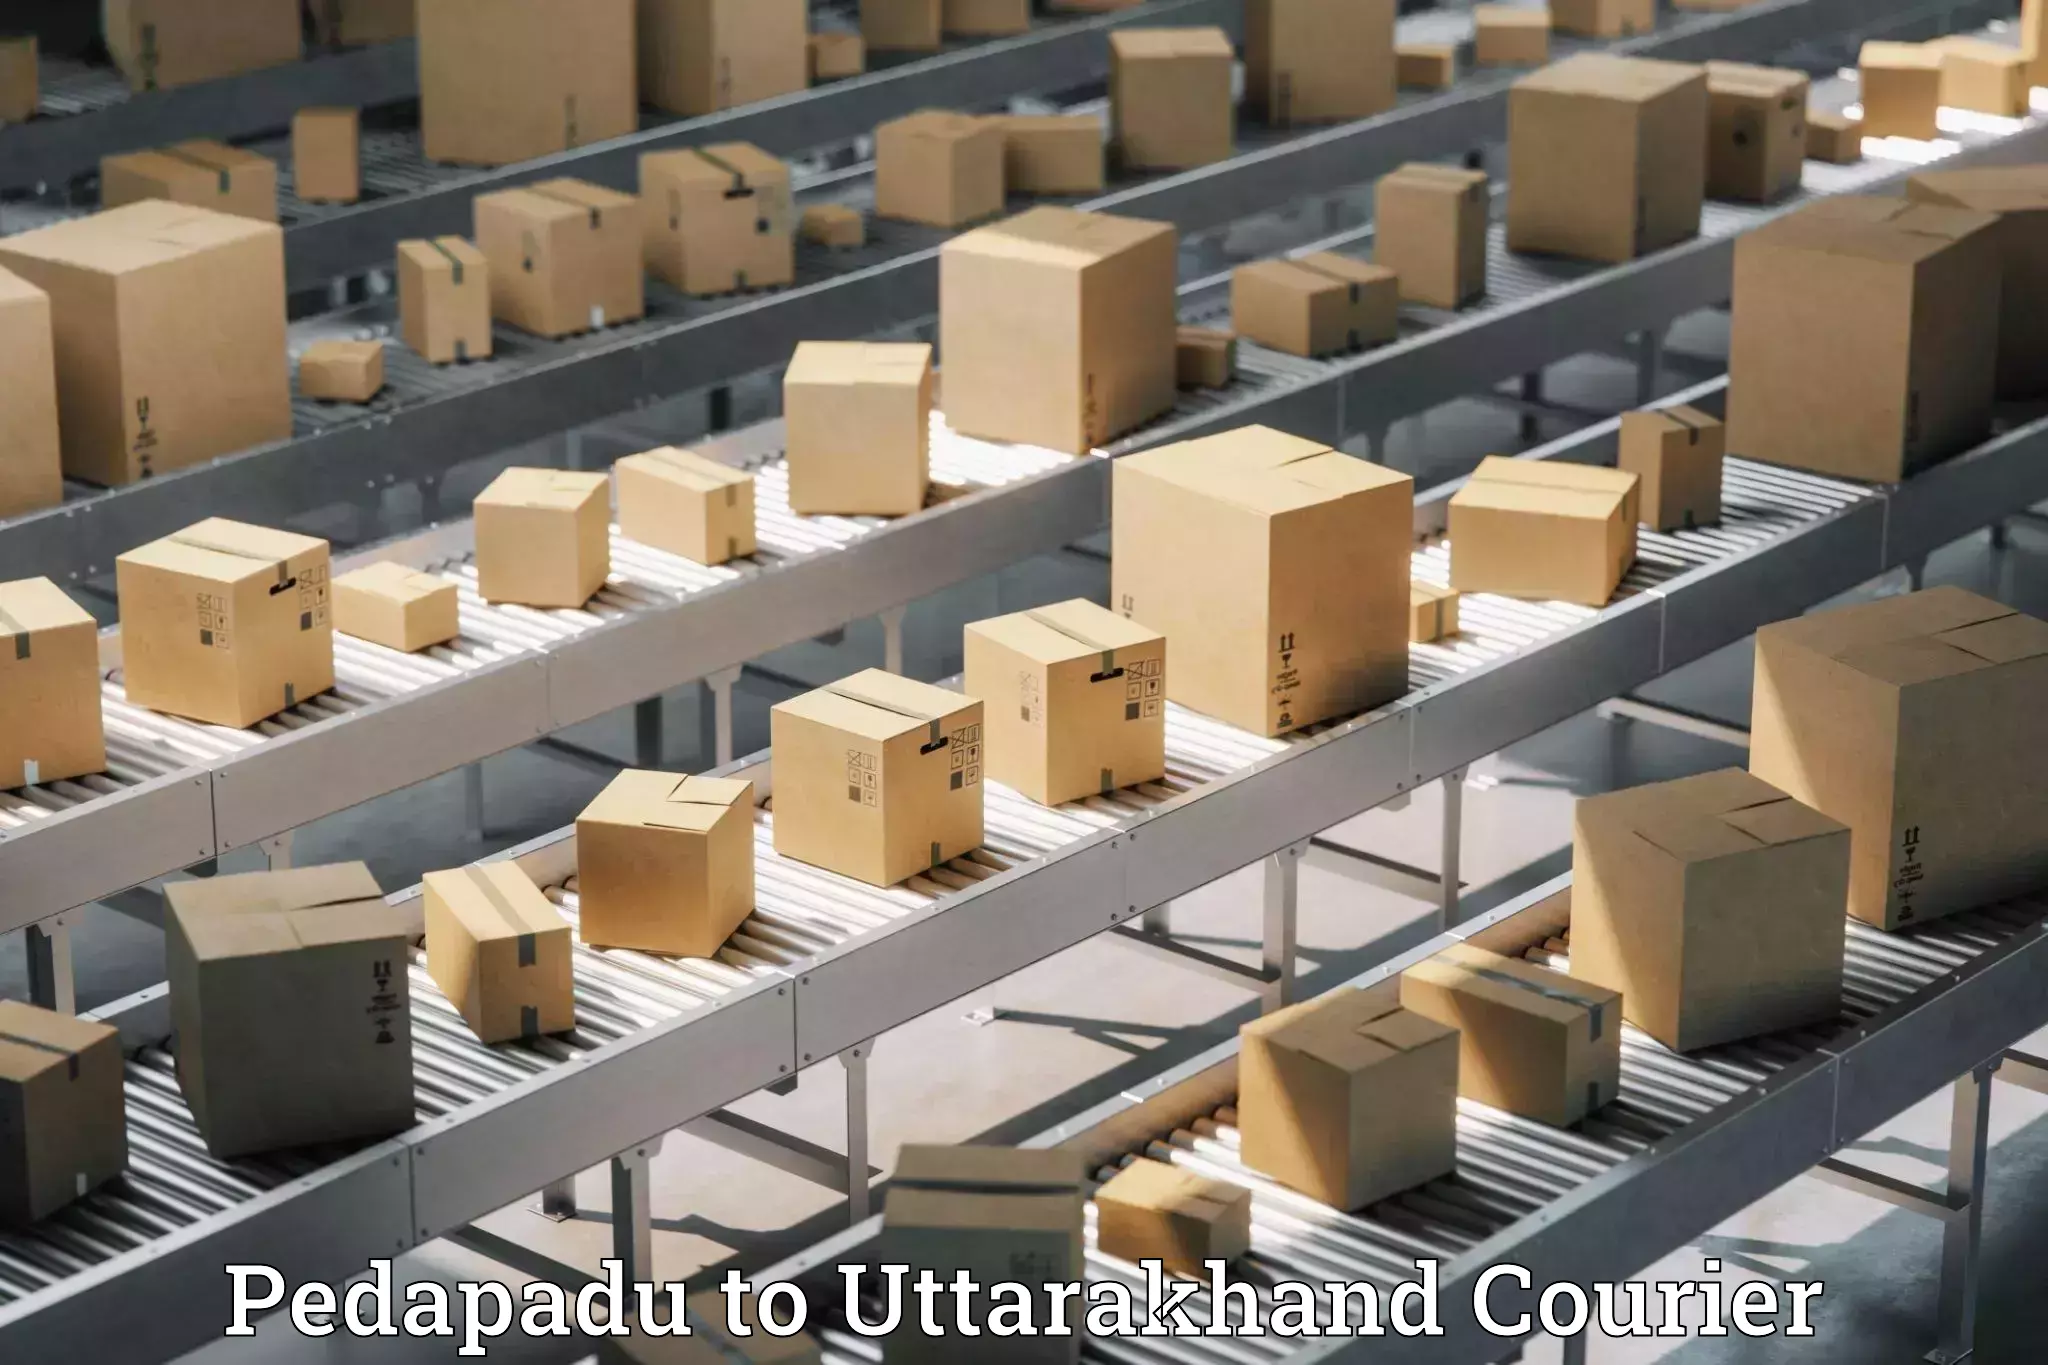 Flexible shipping options in Pedapadu to Champawat